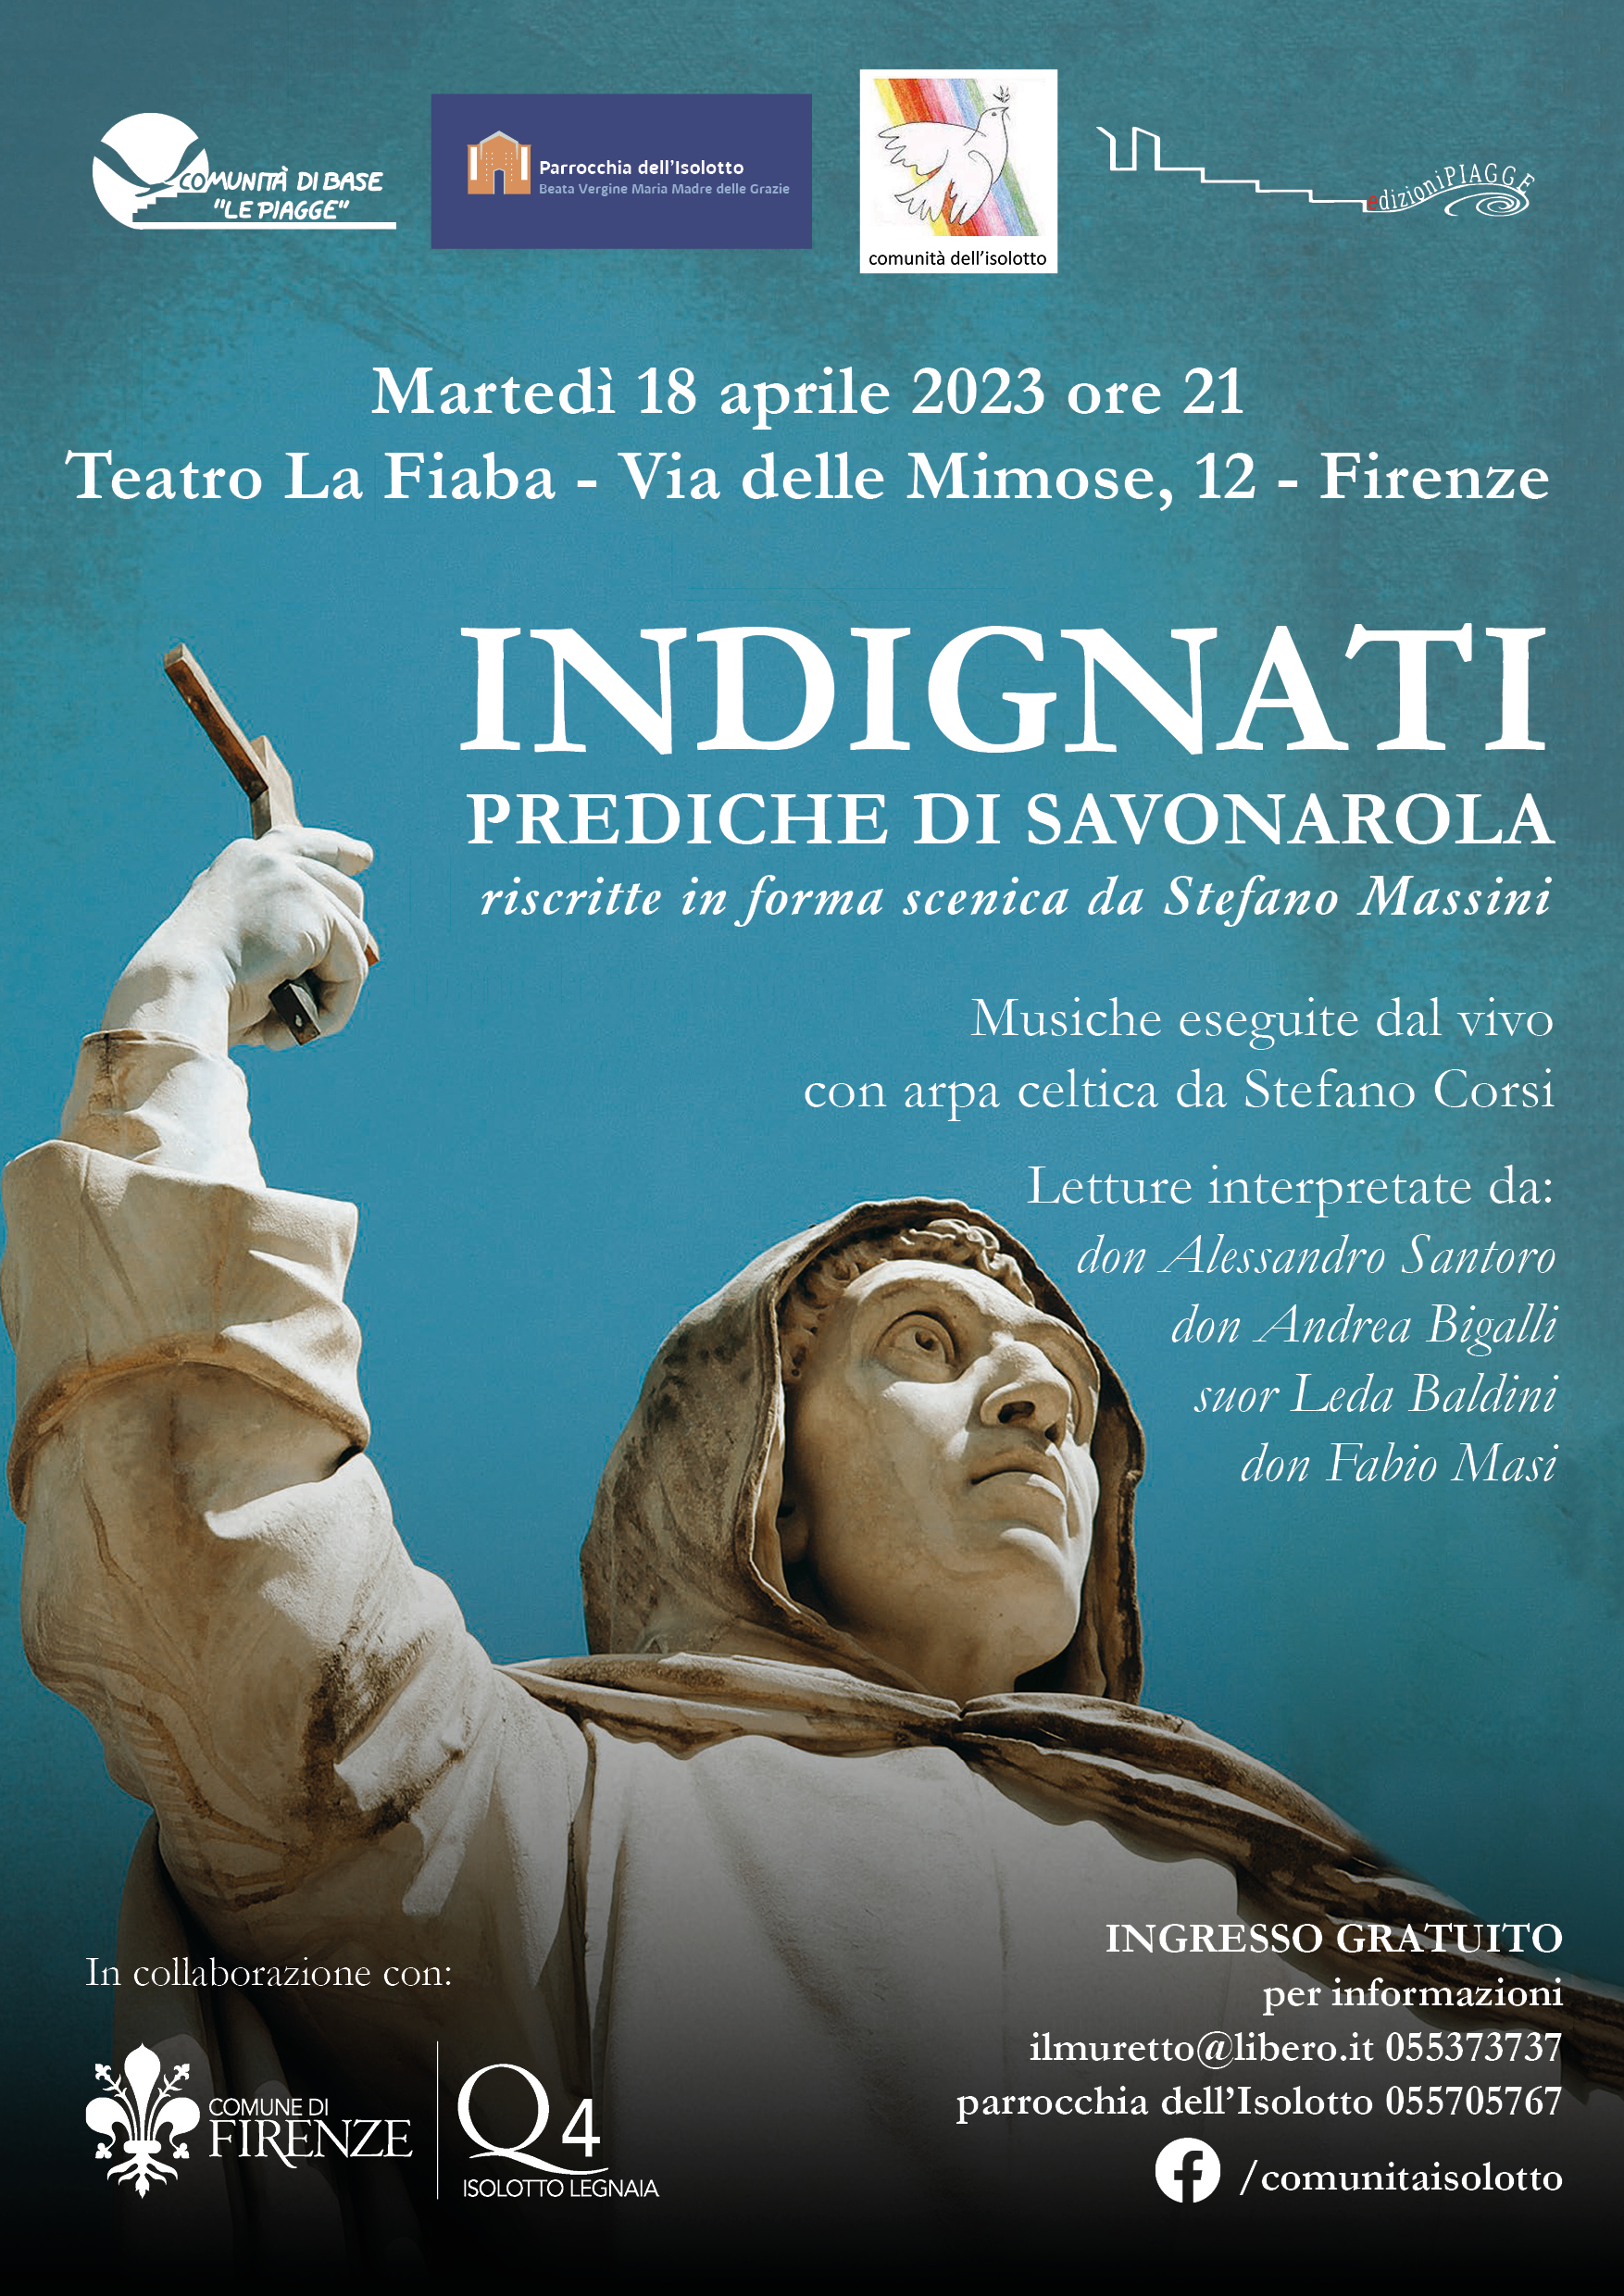 INDIGNATI – Prediche di Savonarola, torna in scena al Teatro La Fiaba (Isolotto) Martedì 18 aprile alle 21